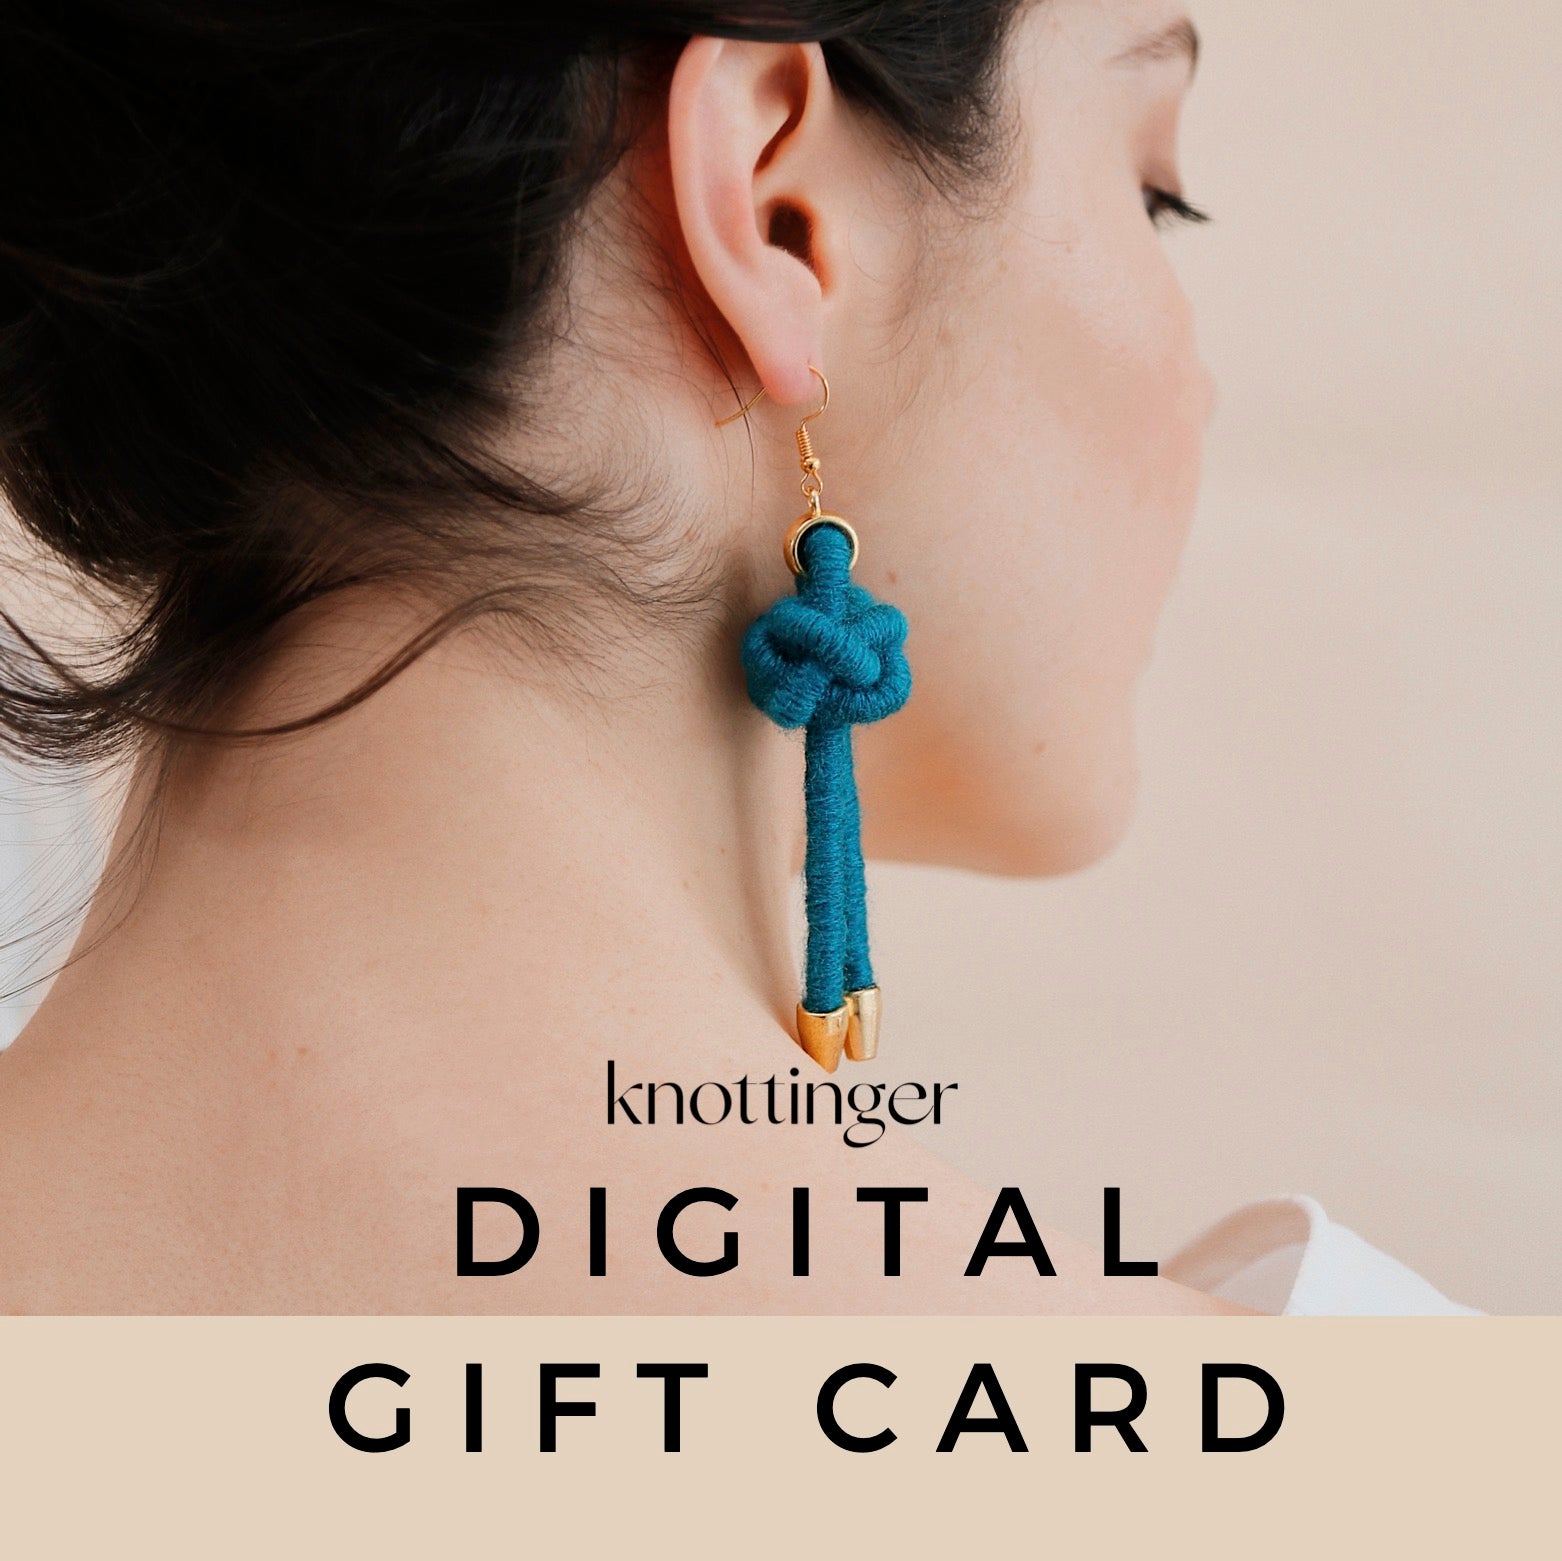 Gift Card - Knottinger